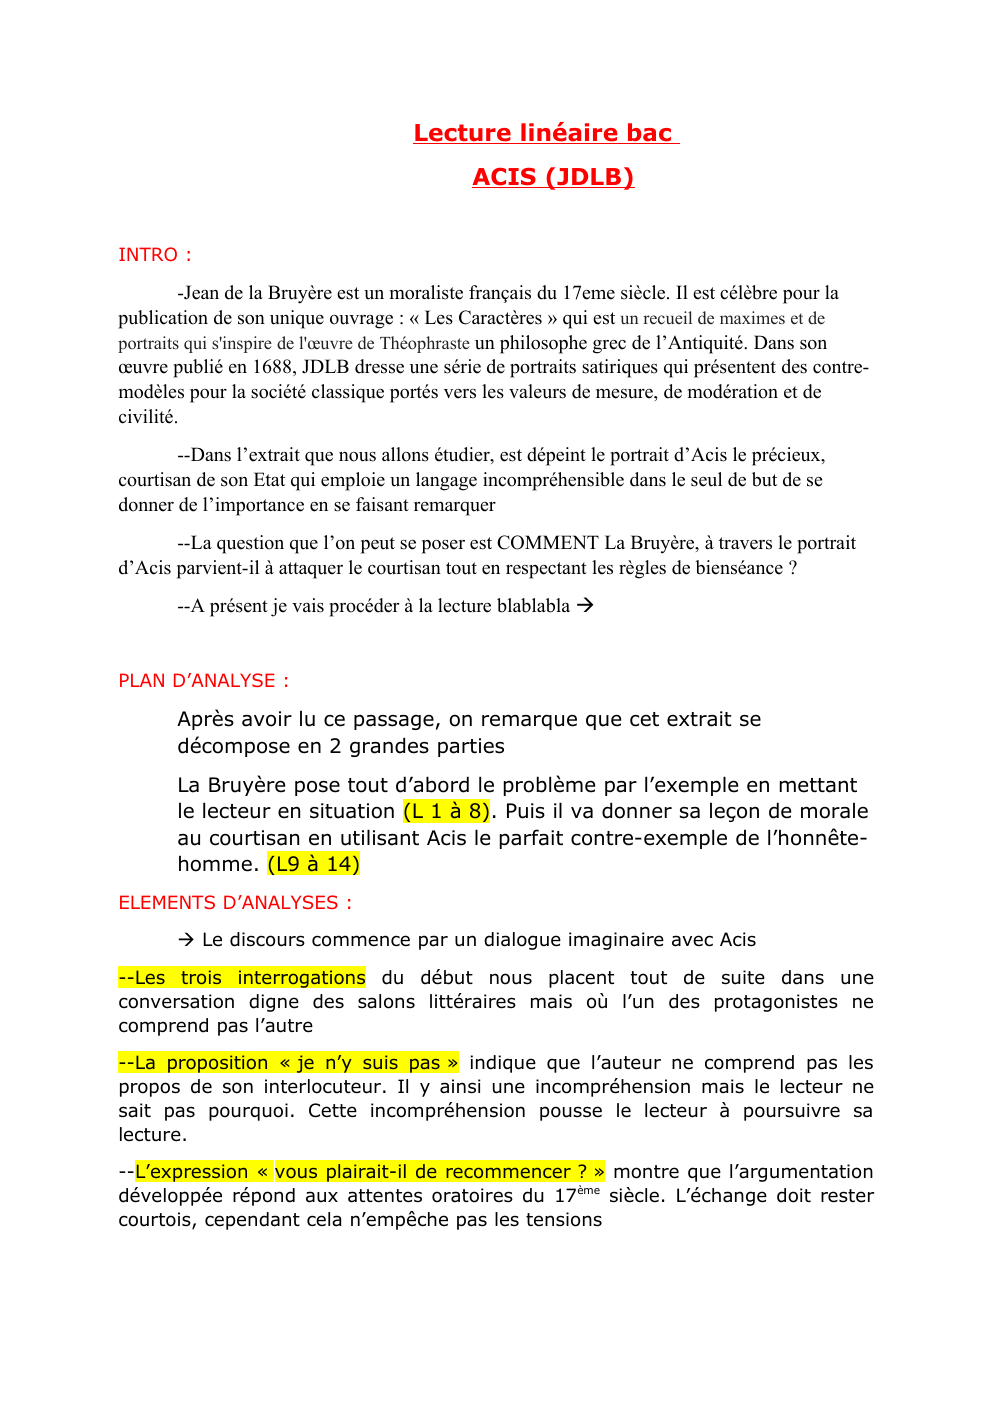 Prévisualisation du document lecture linéaire ACIS - Jean de la Bruyère